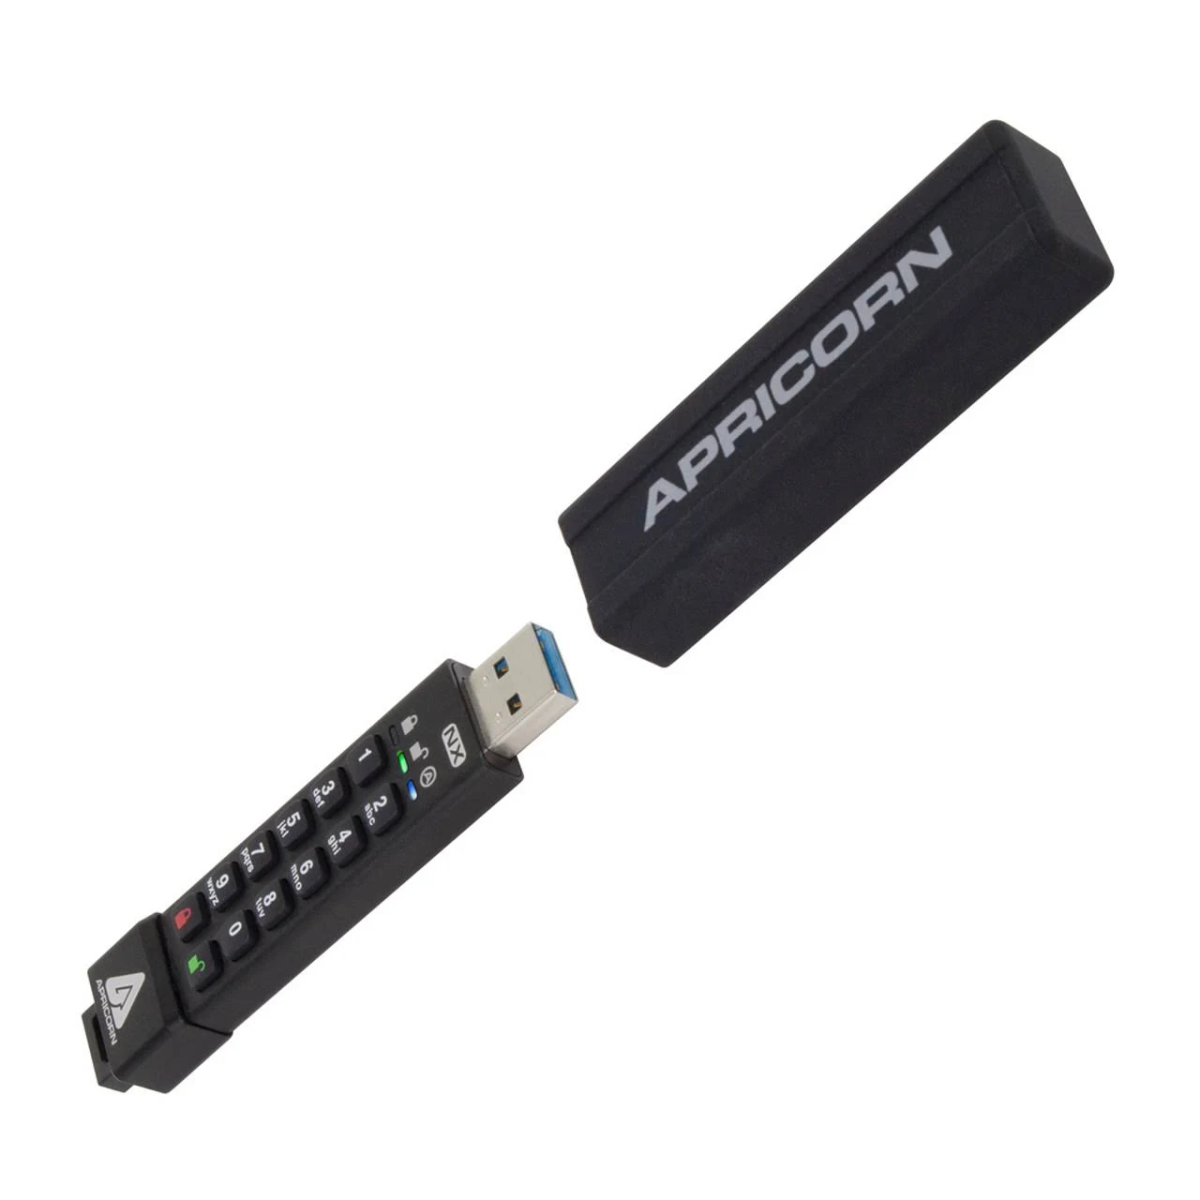 APRICORN ASK3-NX-4GB USB-Flash-Laufwerk (Schwarz, 4 GB)